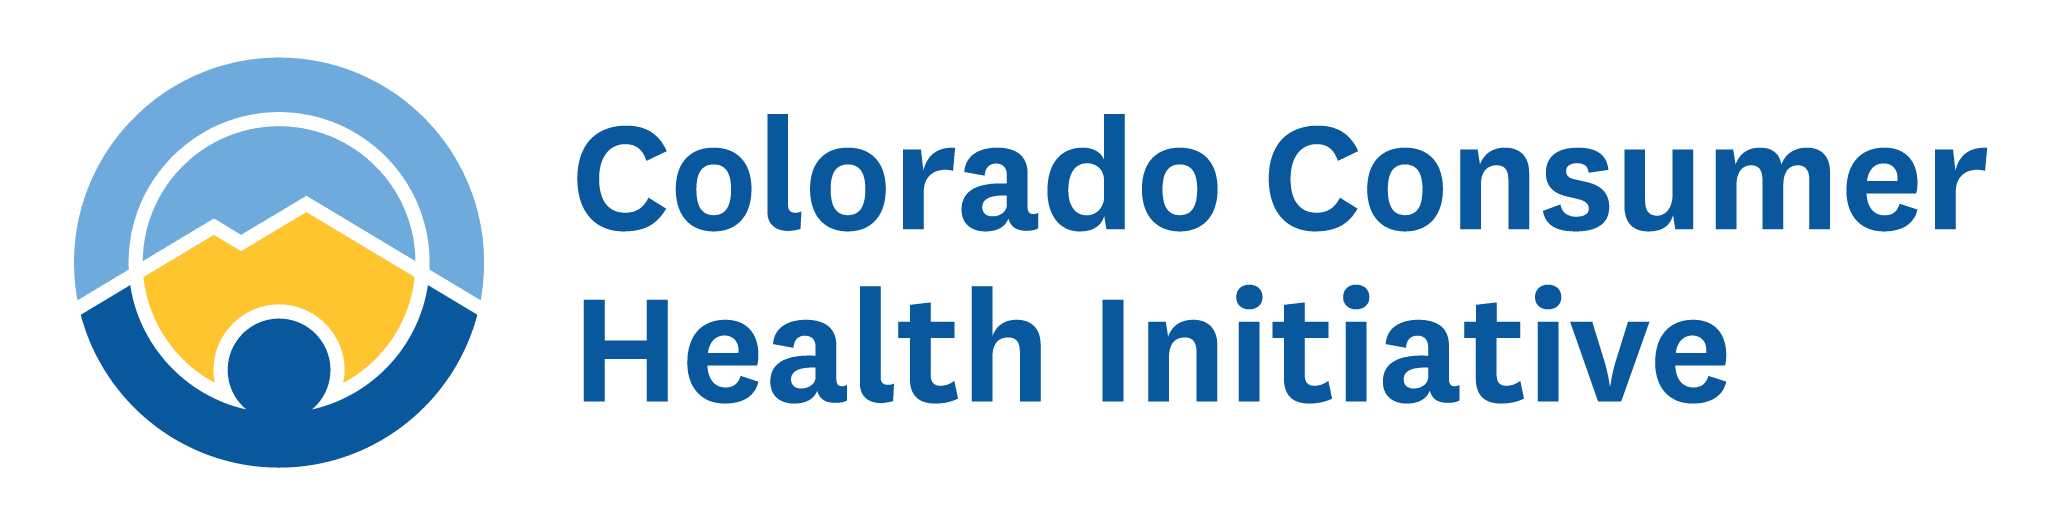 Colorado Consumer Health Initiative logo